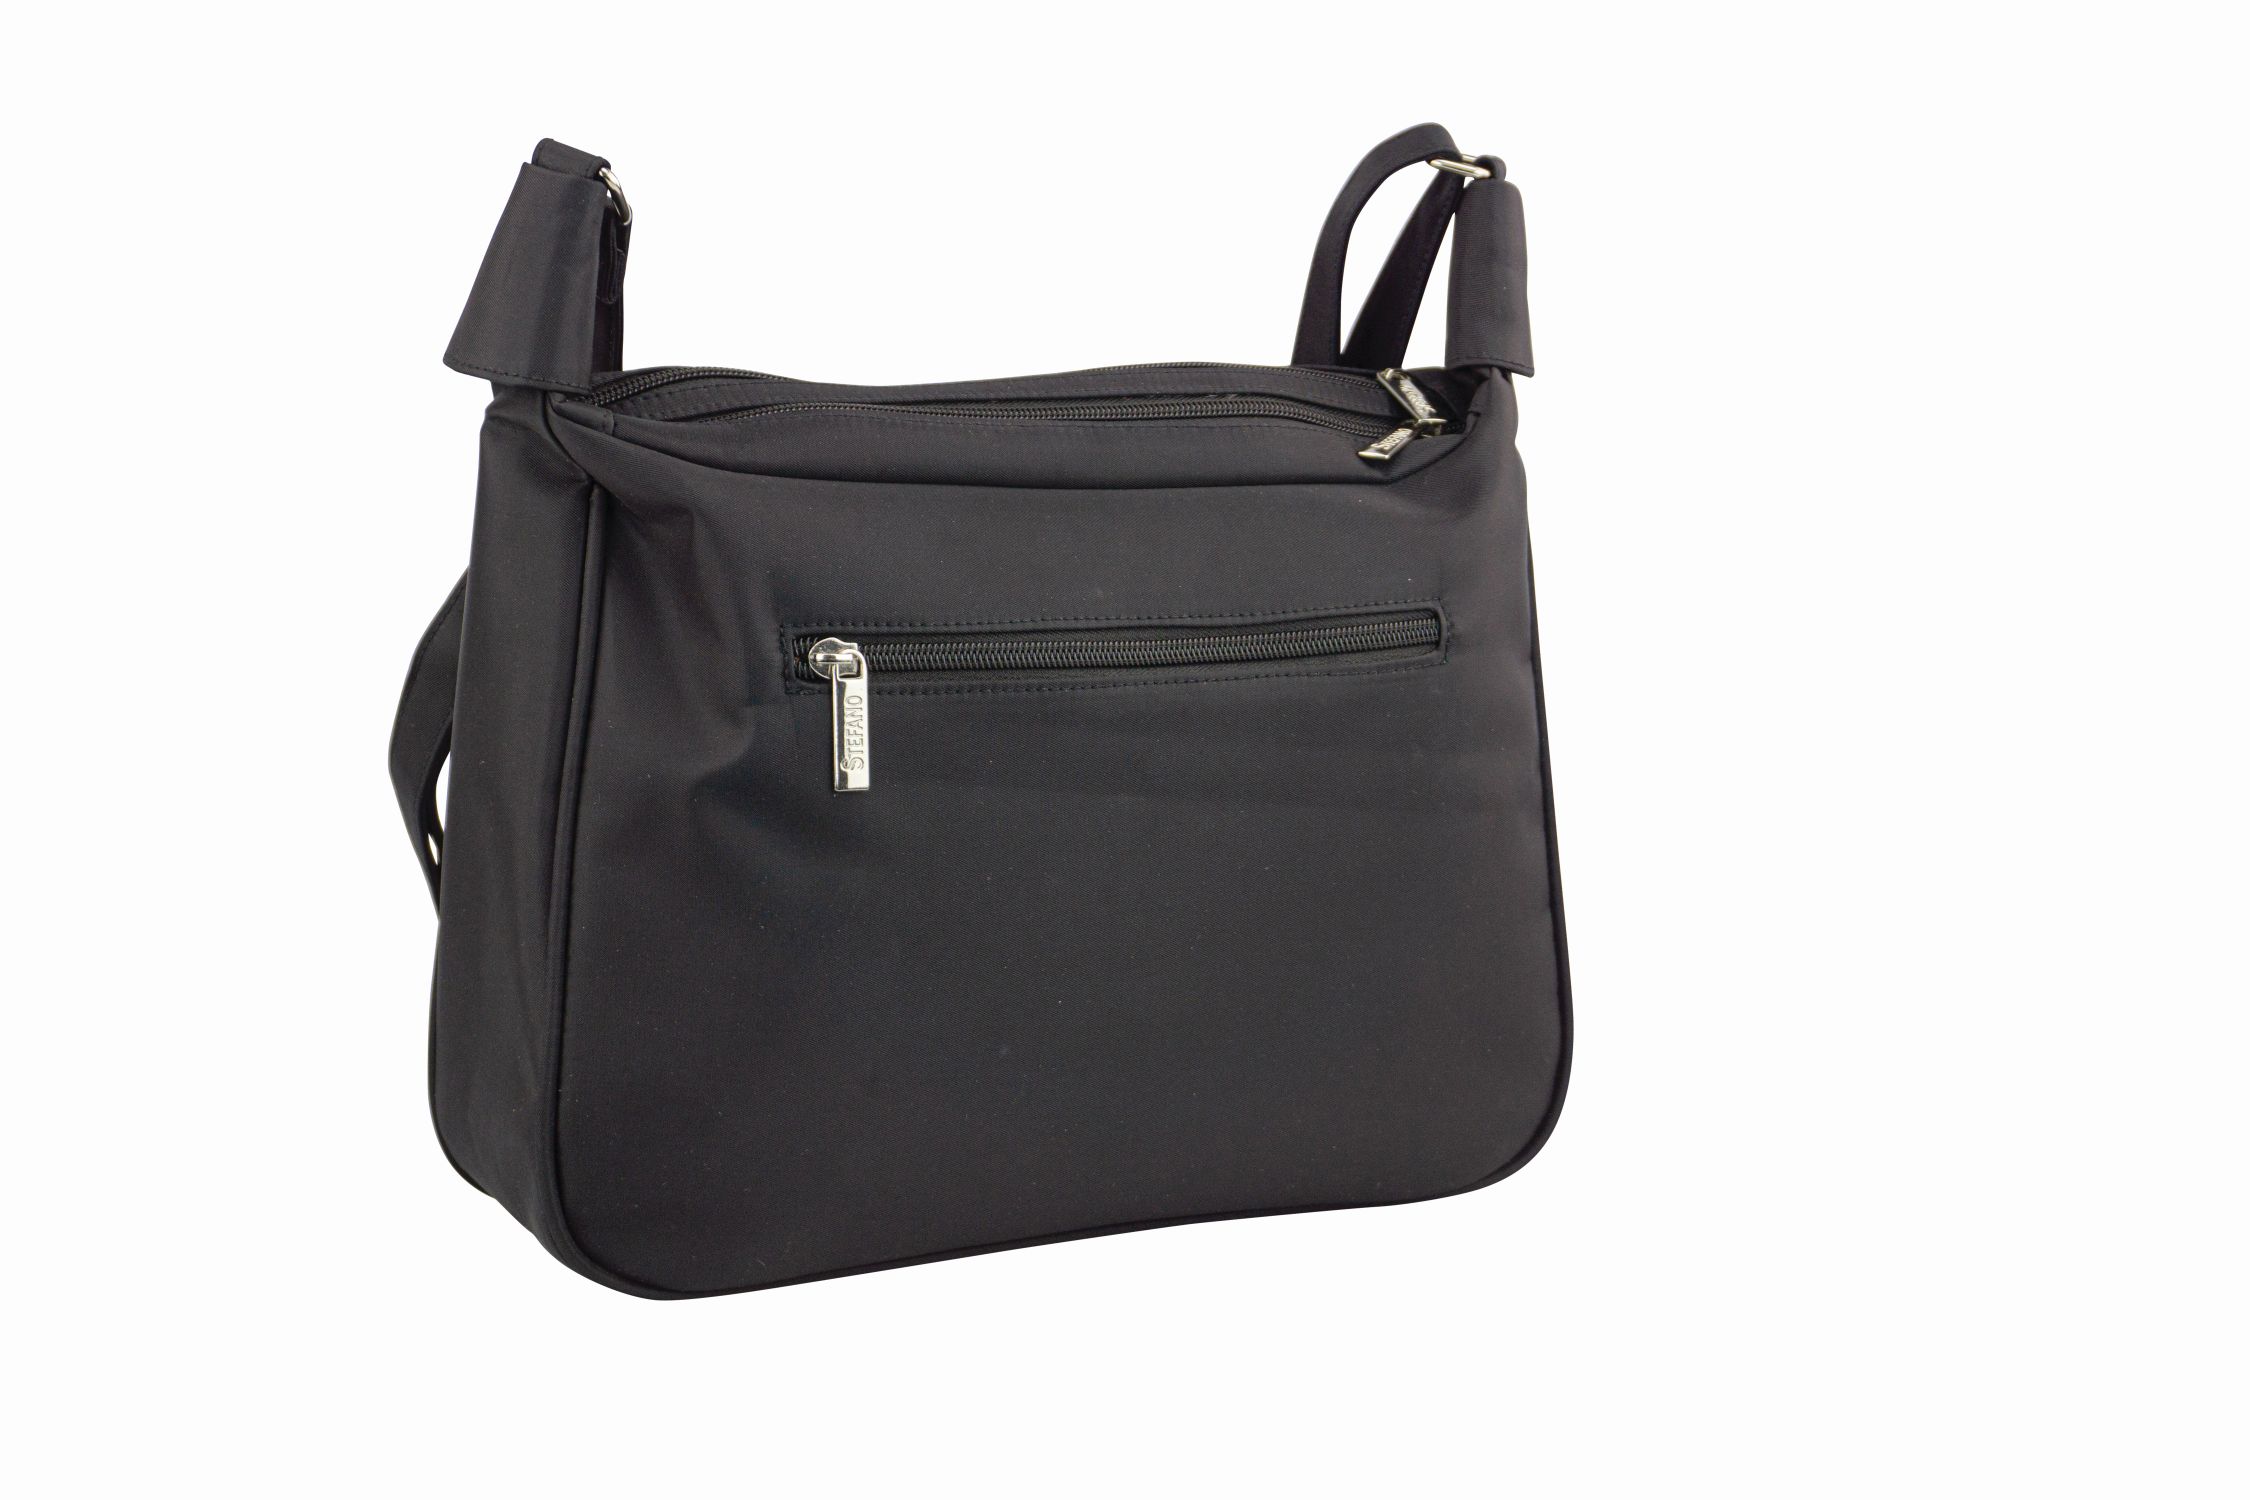 Damentasche Umhängetasche "Federleicht" von Stefano in schwarz - 918-134-60